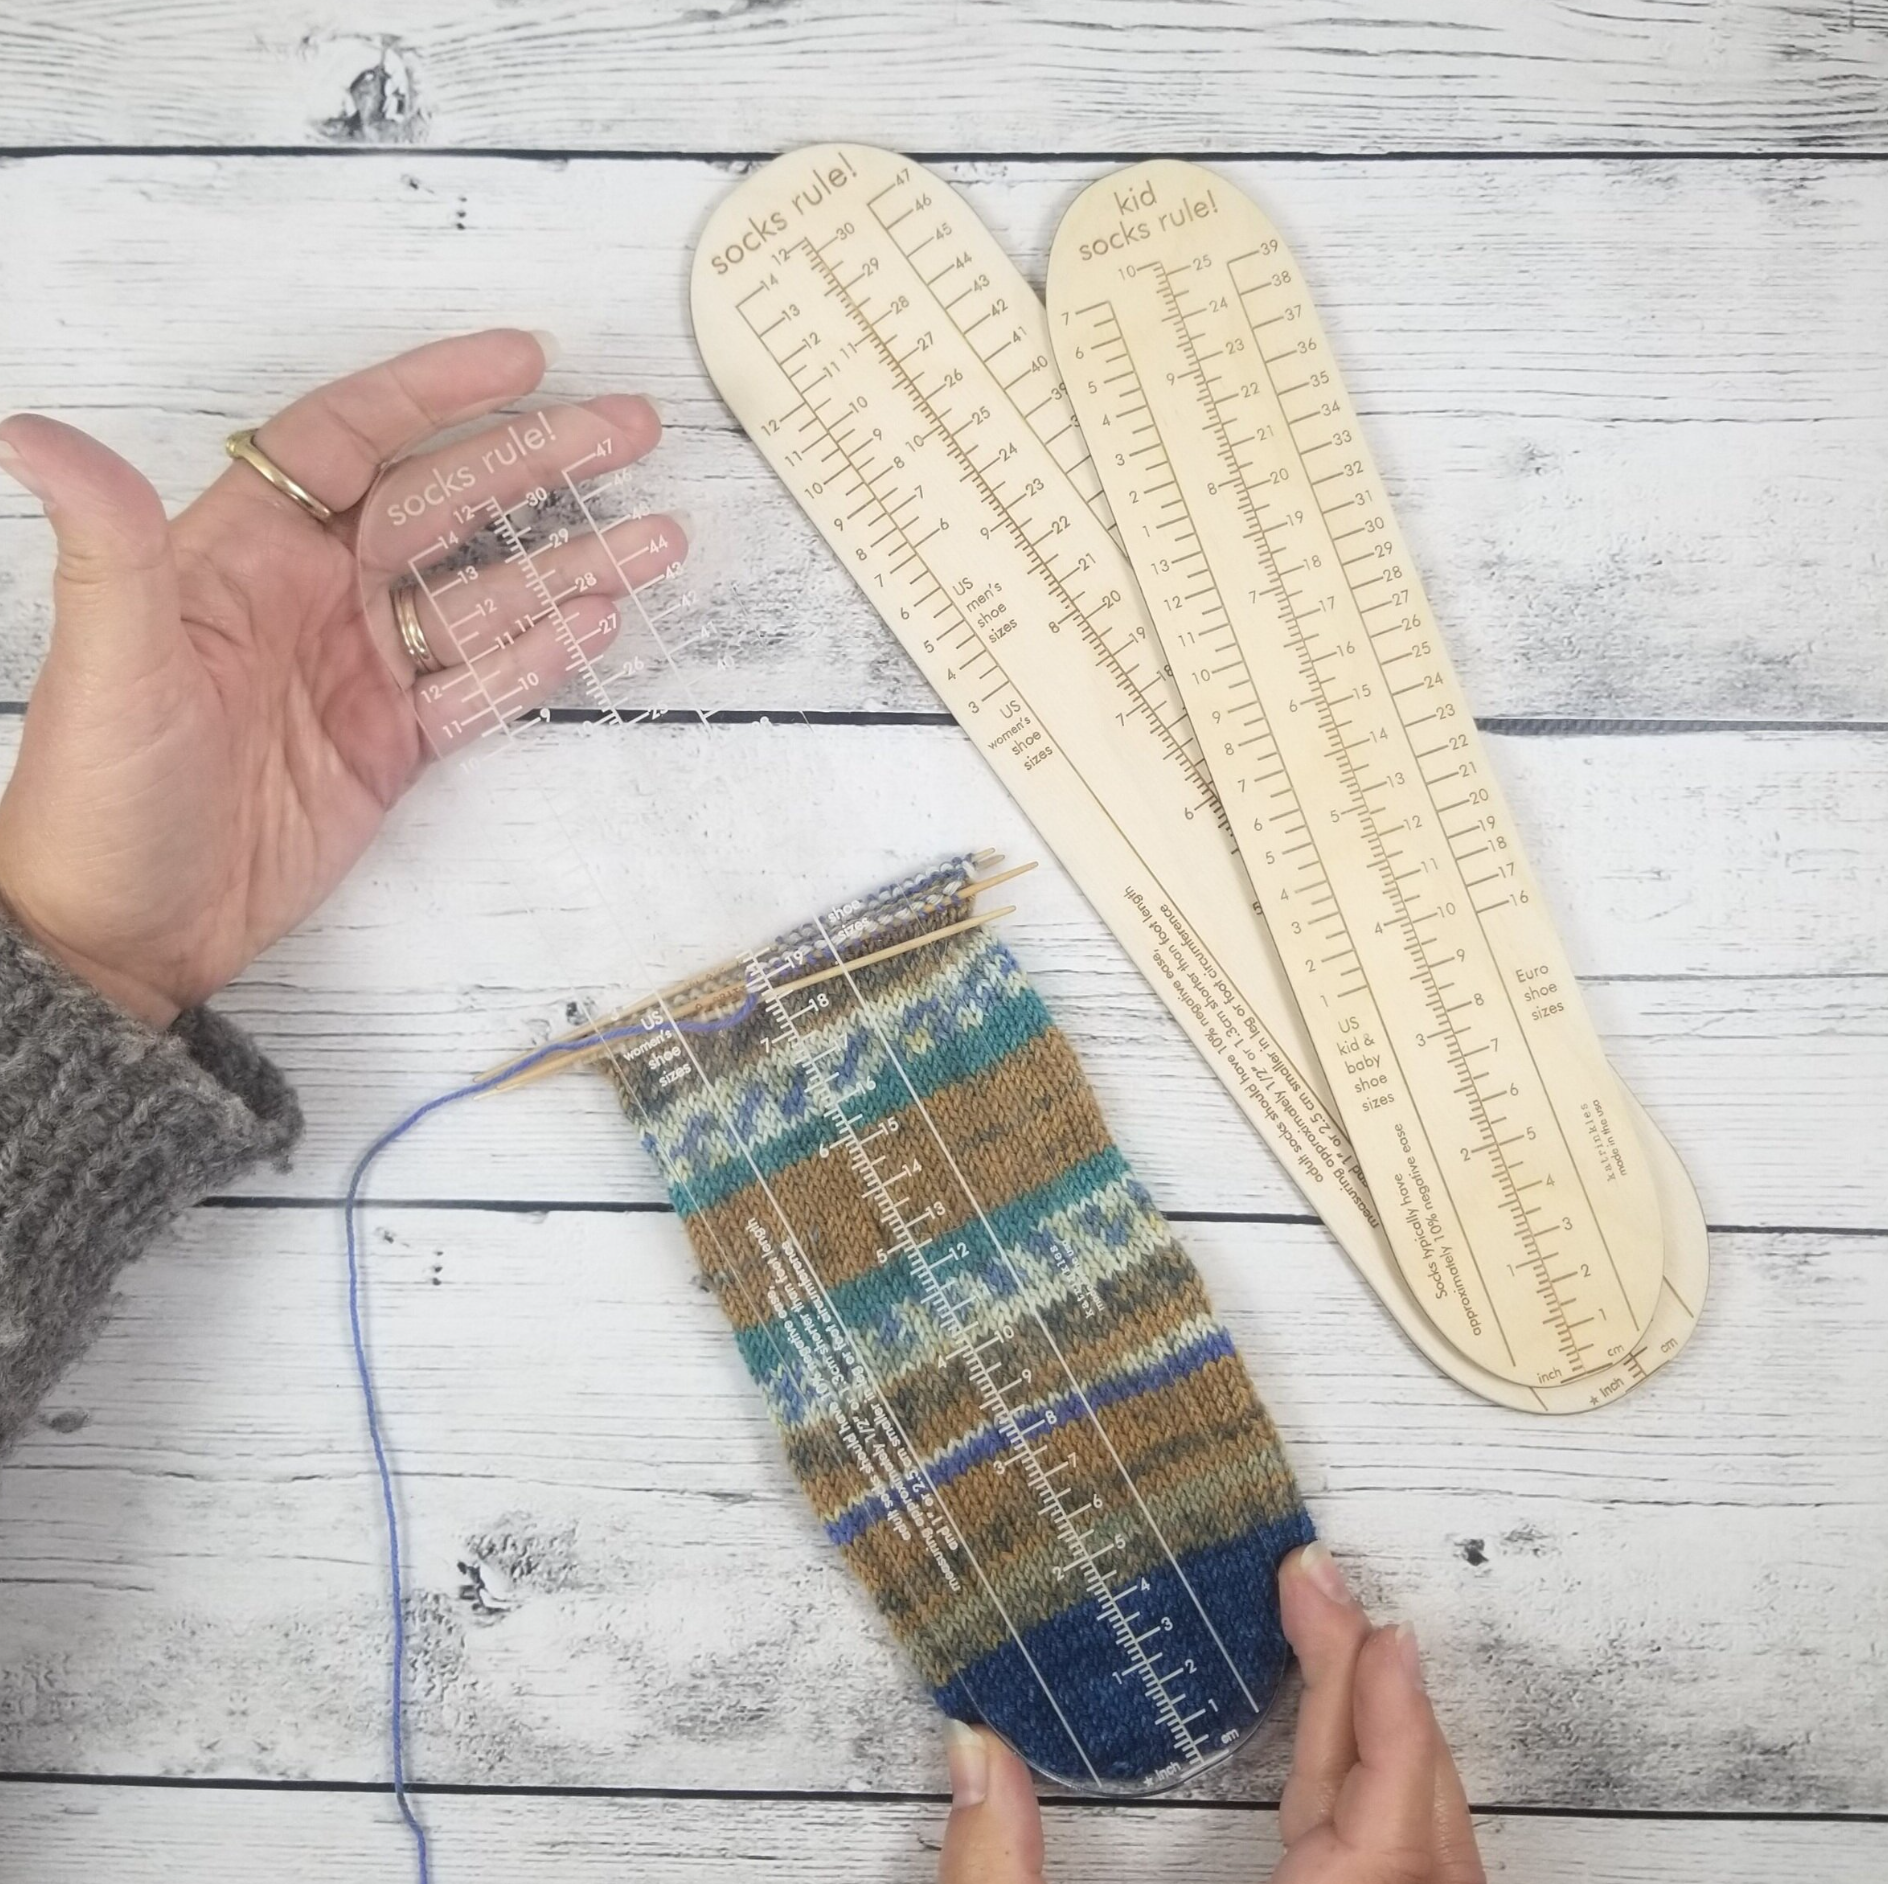 Katrinkles - Kids Socks Rule! Clear Ruler for Measuring Socks - Yarn Loop